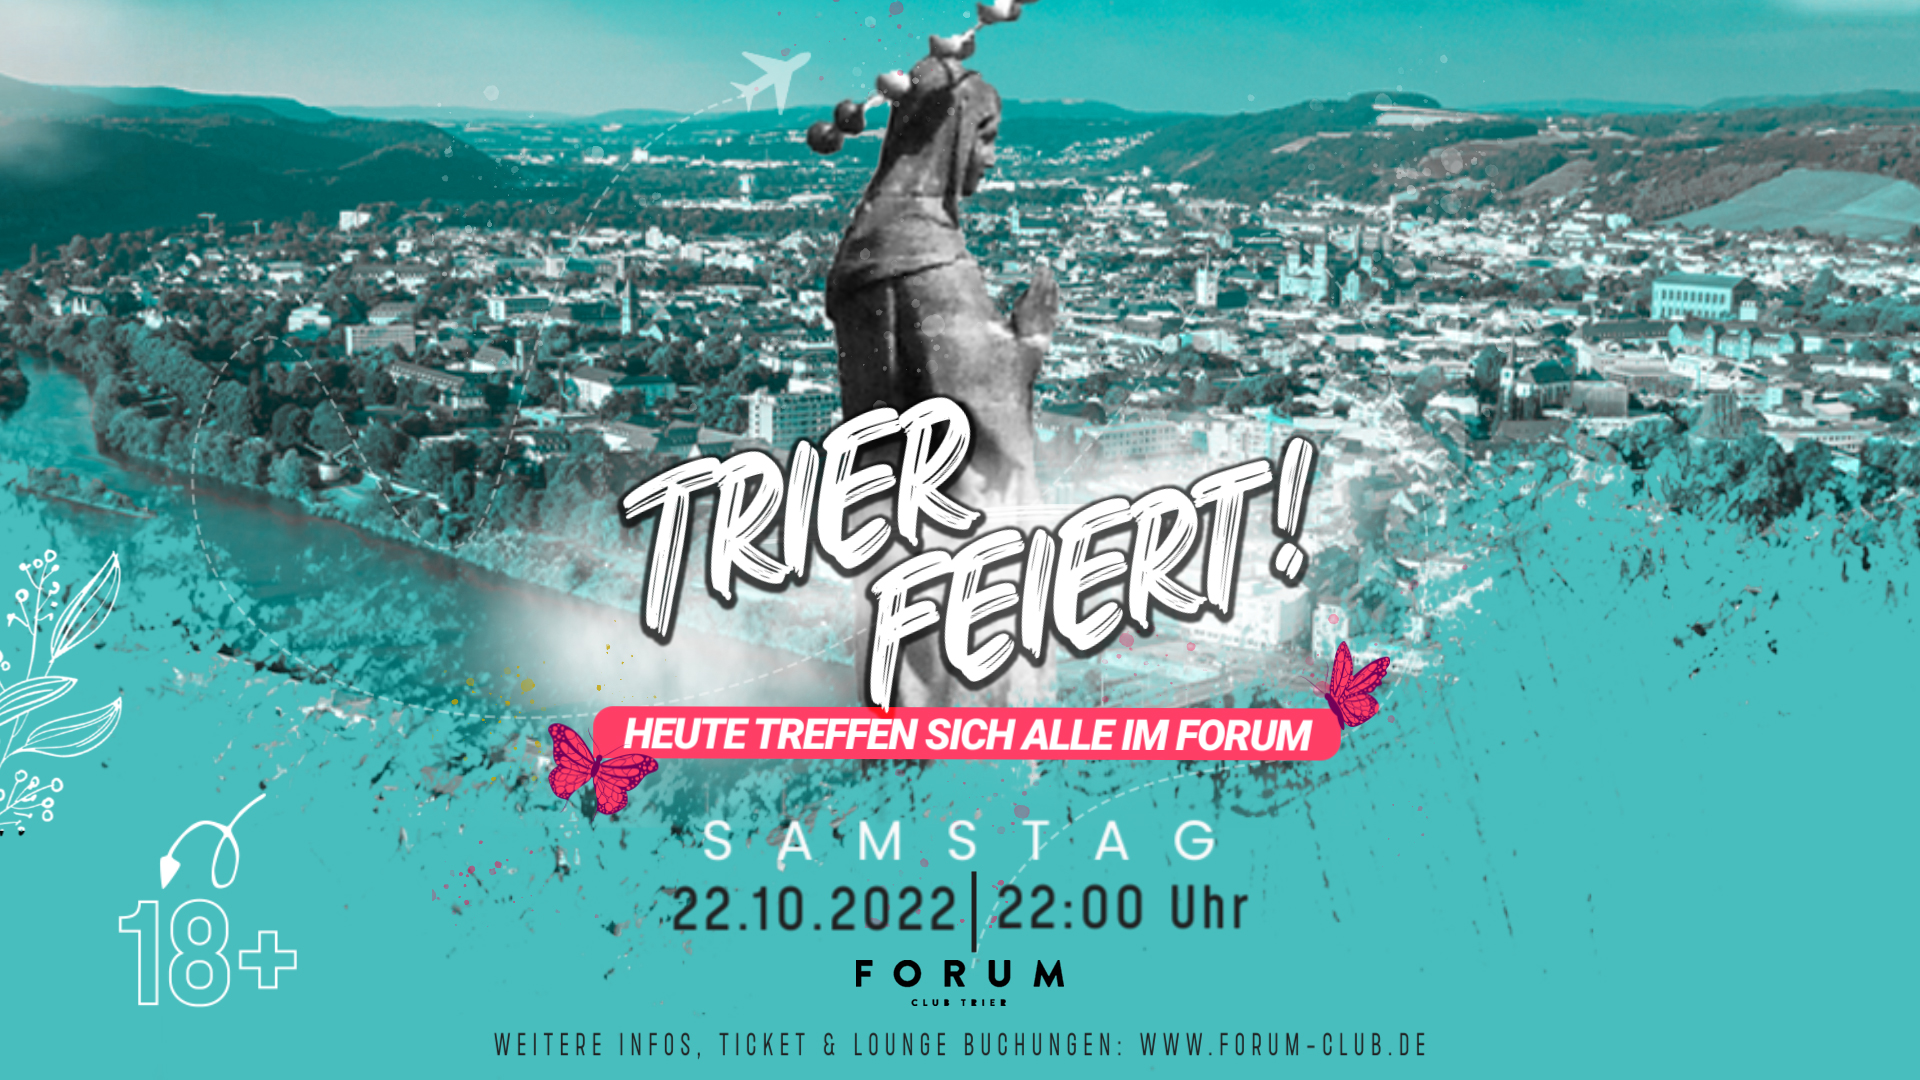 Forum Club Trier – Trier feiert